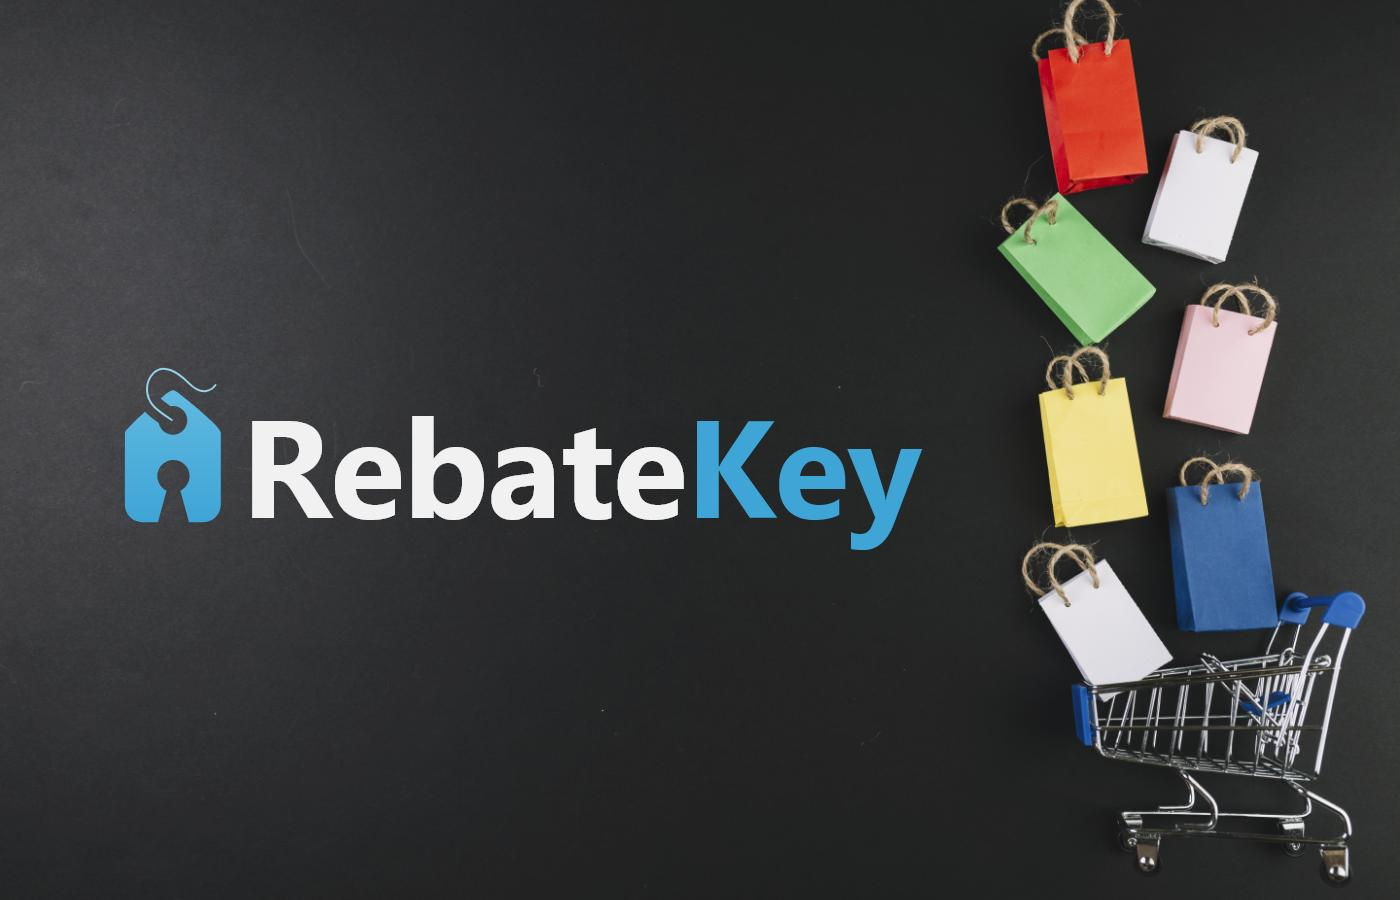 Rebate Key Get Up To 99 Cash Back Rebates When Shopping Online